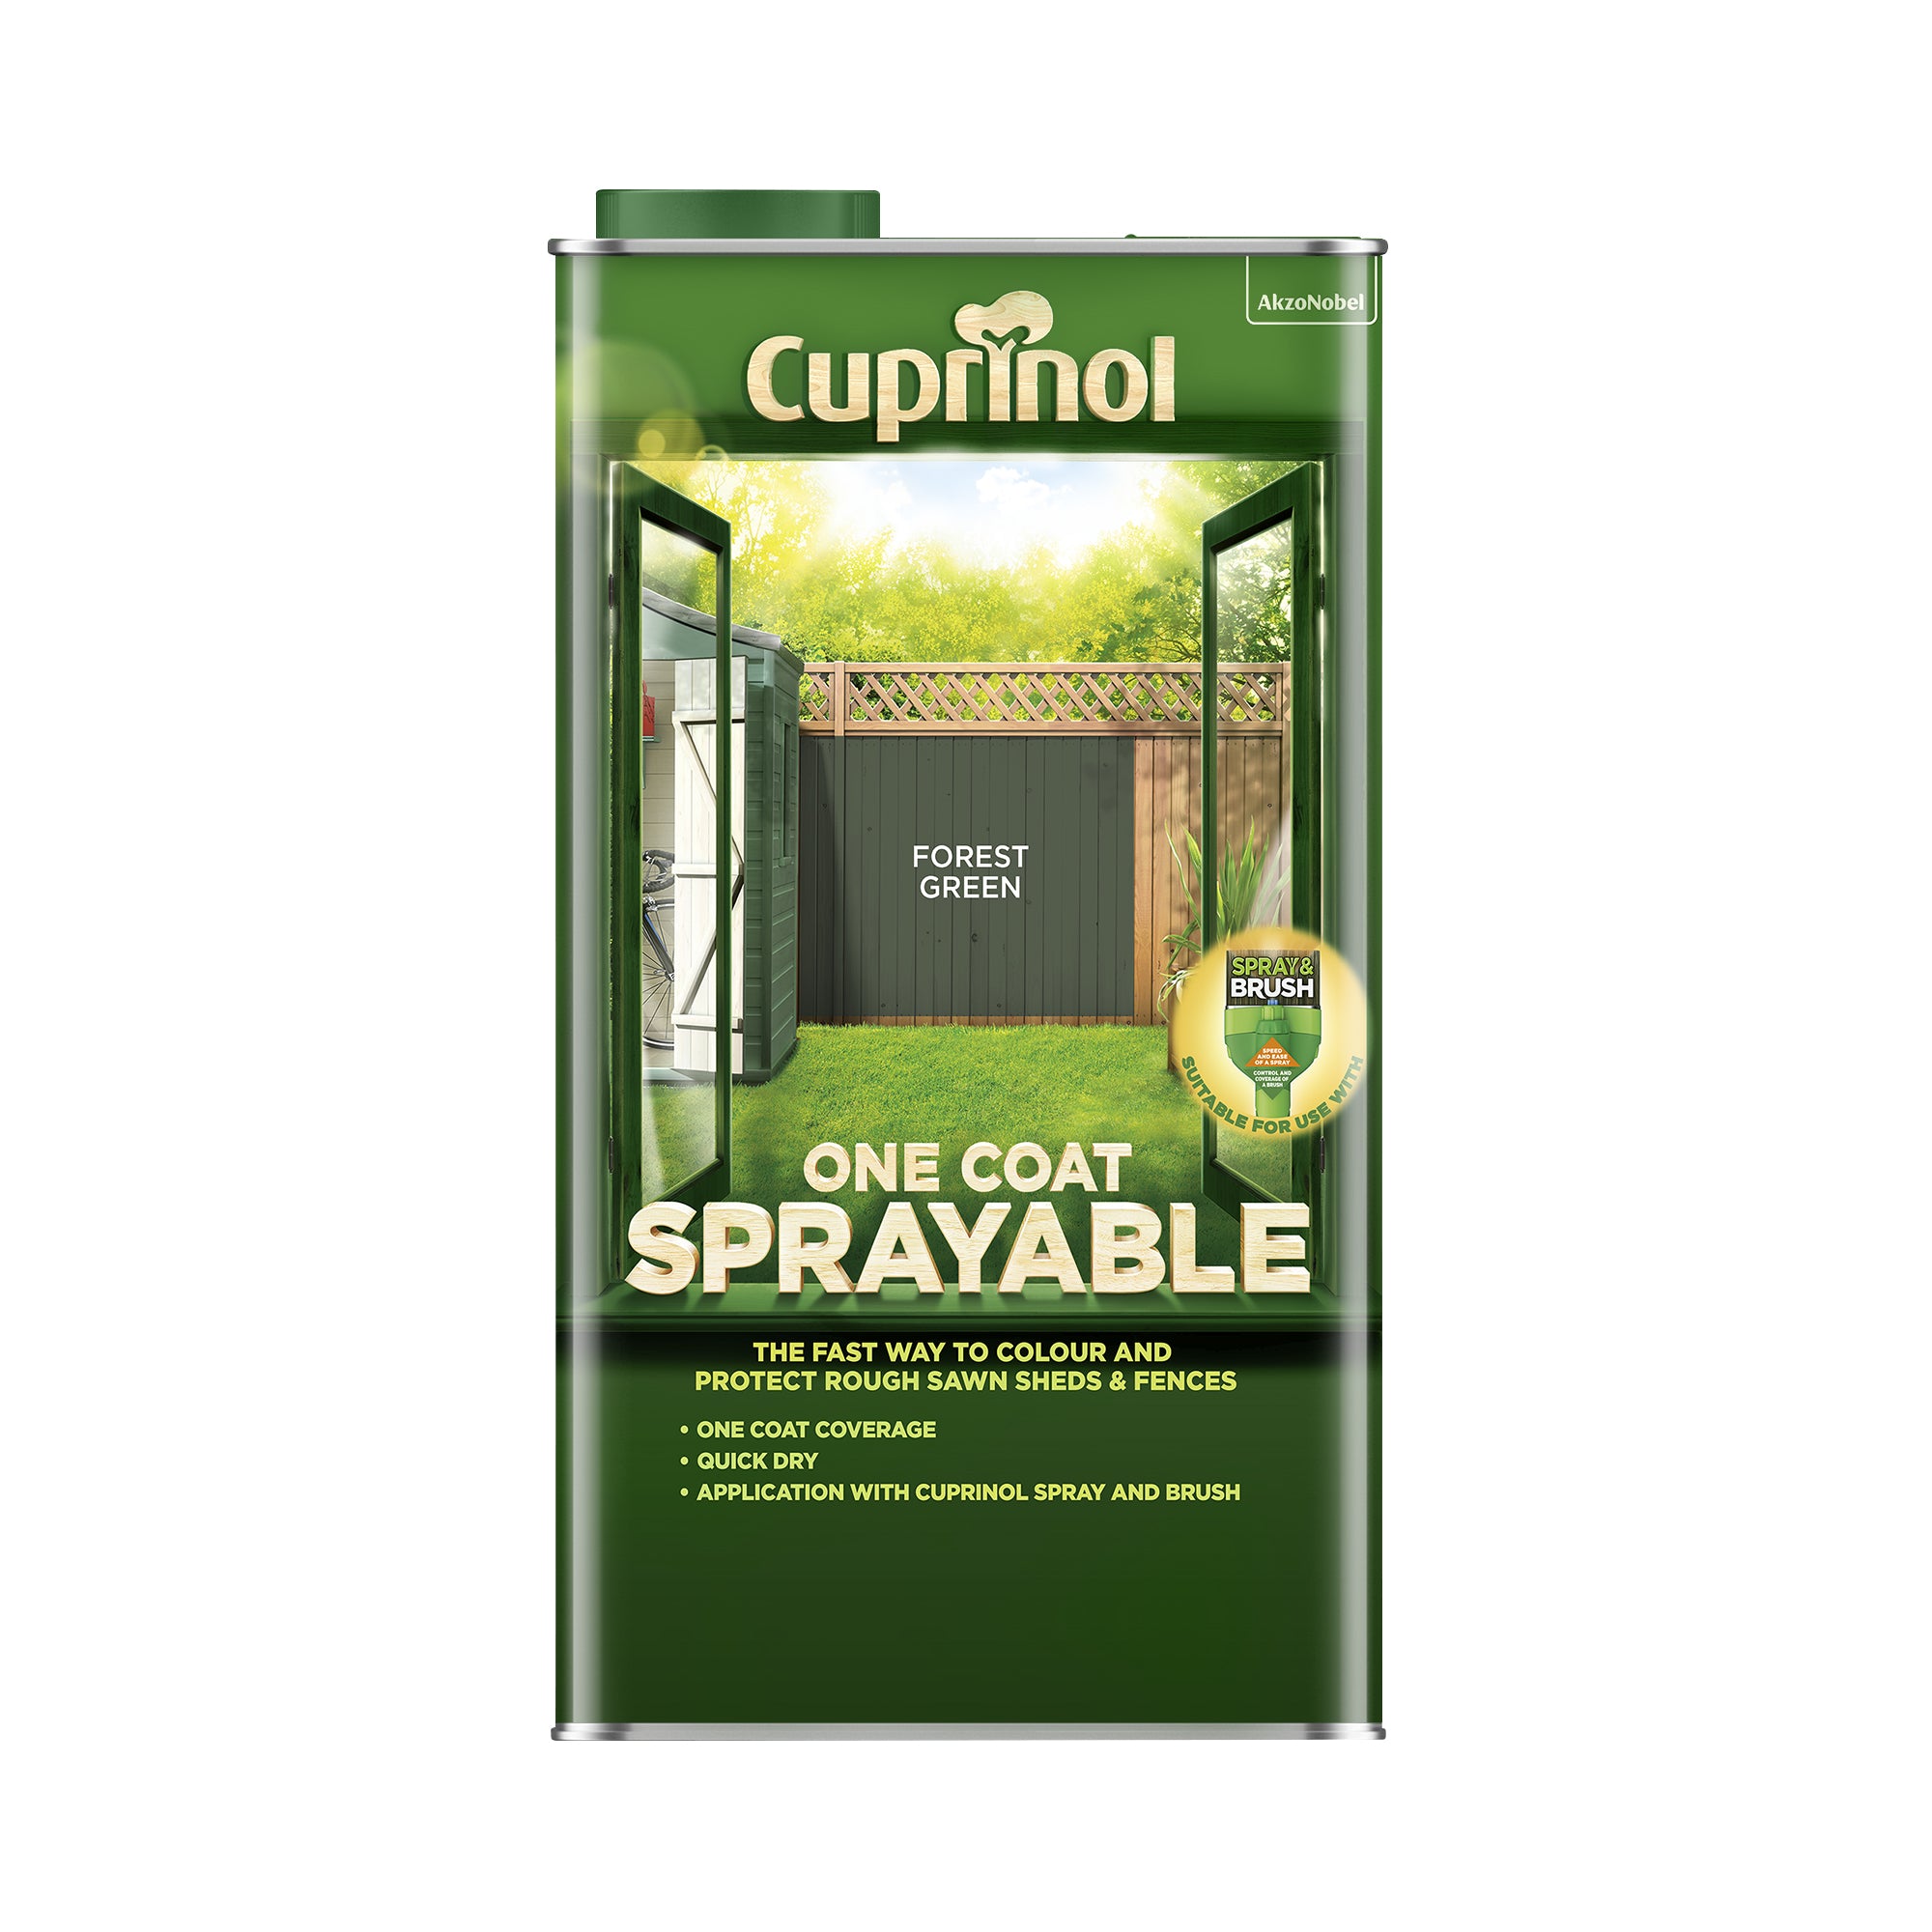 Cuprinol Spray & Fence Treatment Forest Green 5L